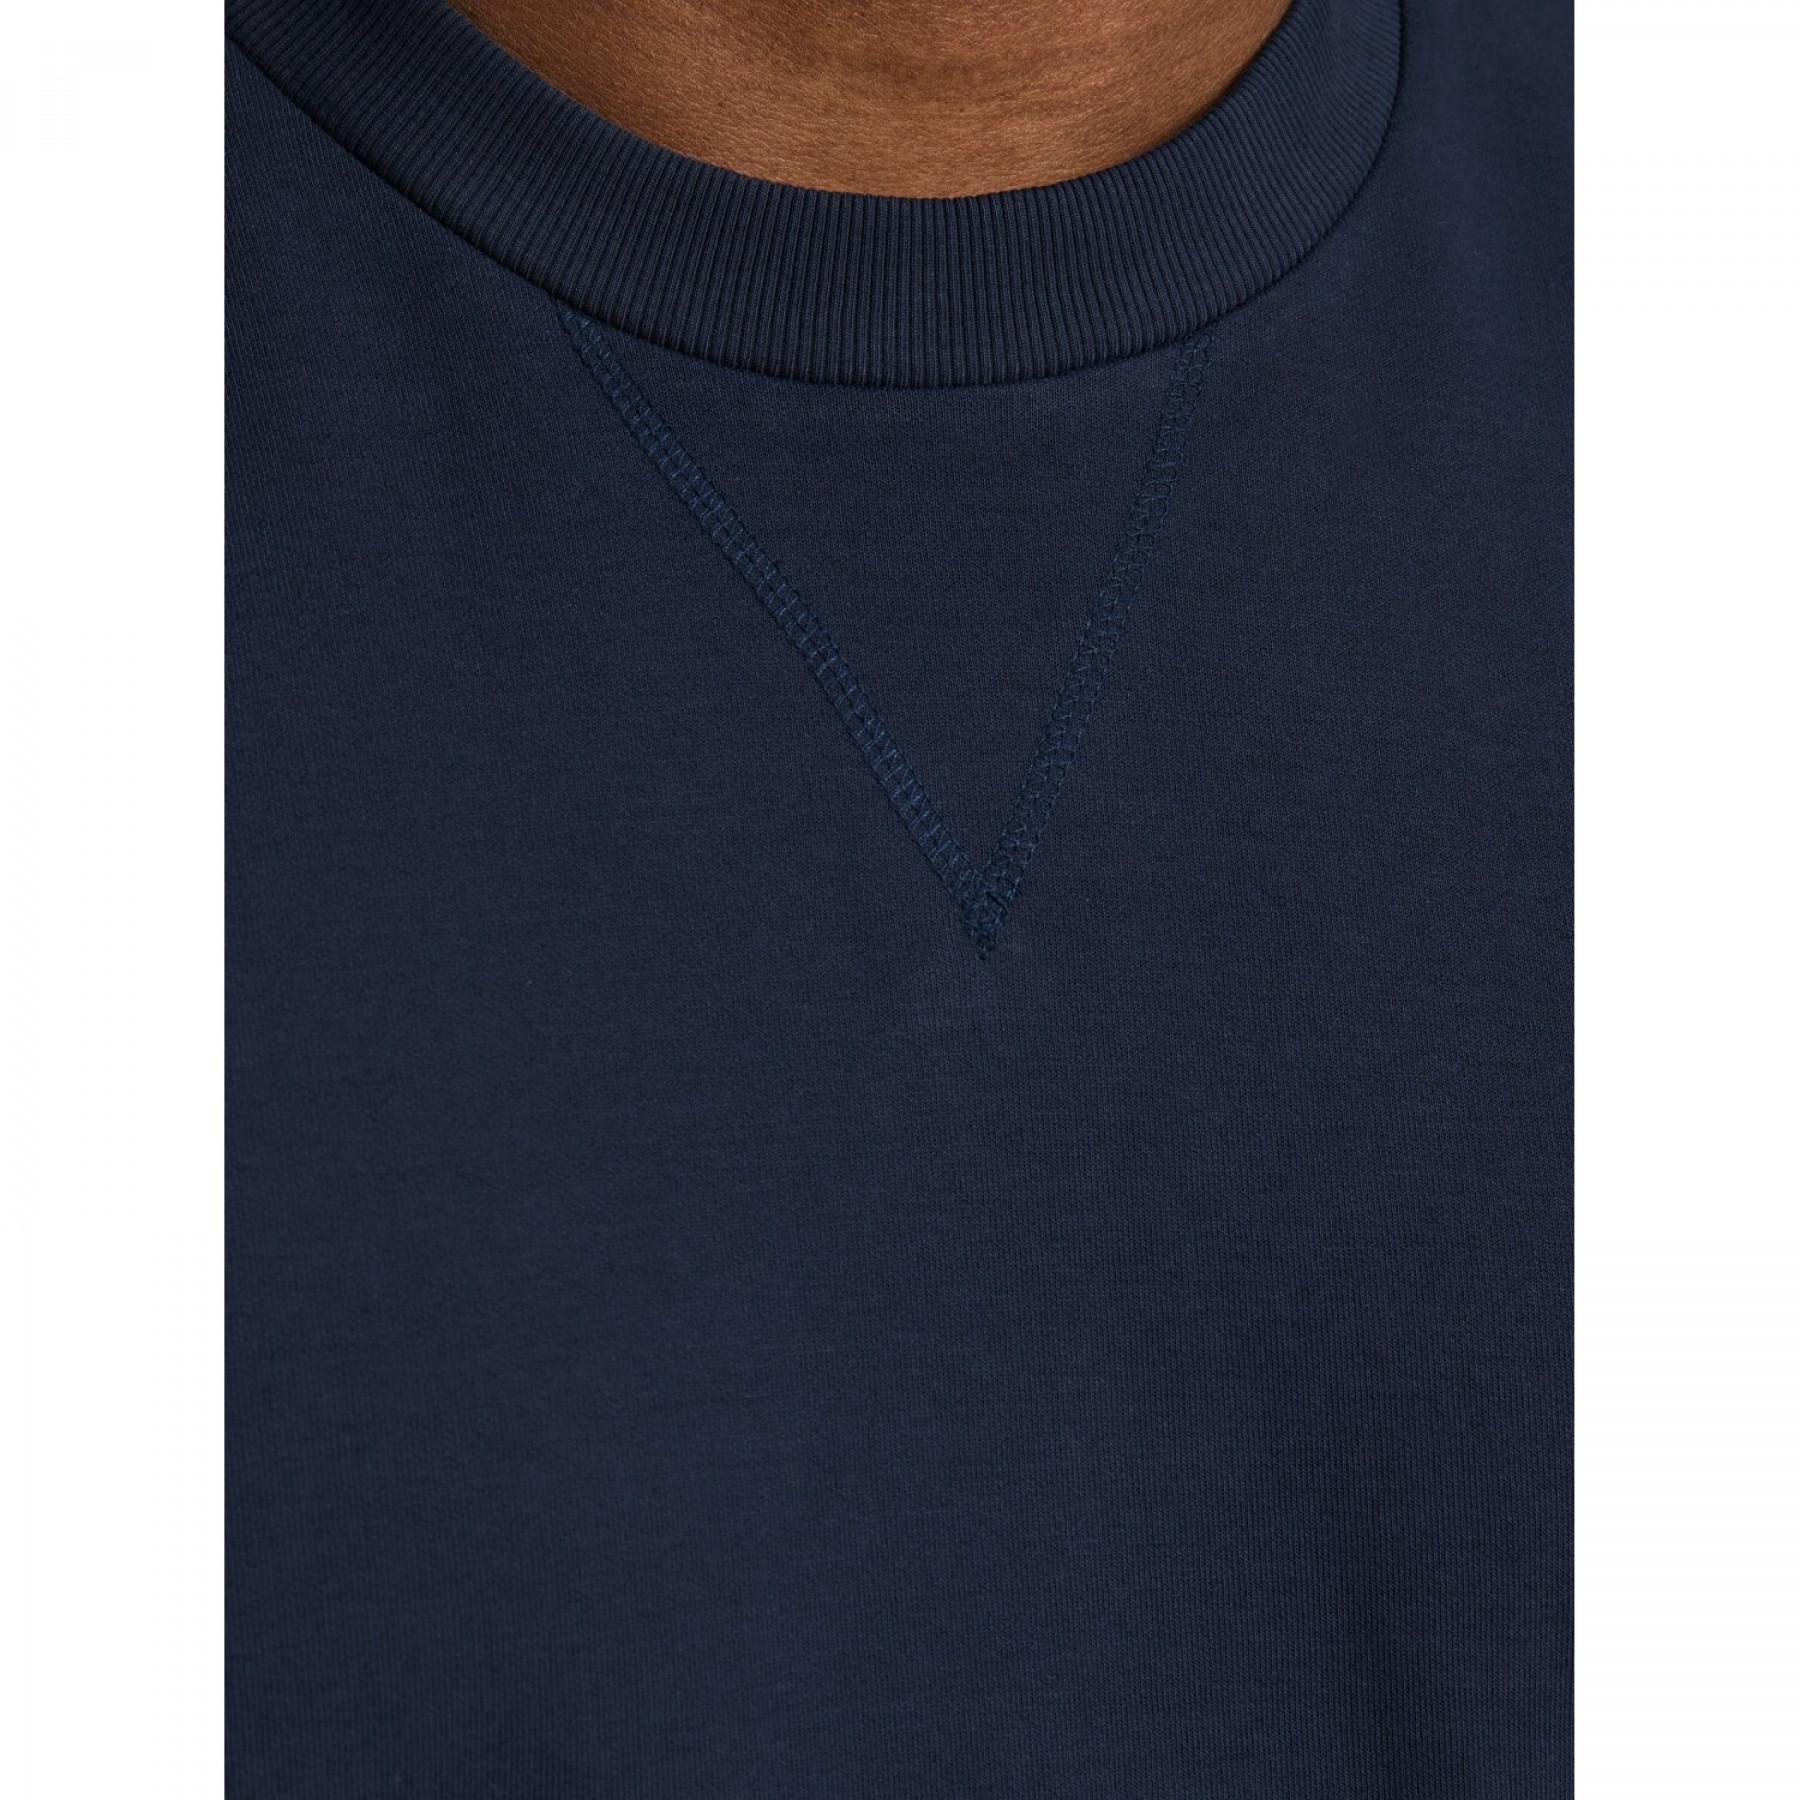 Sweatshirt in Übergröße Jack & Jones Basic Bleu